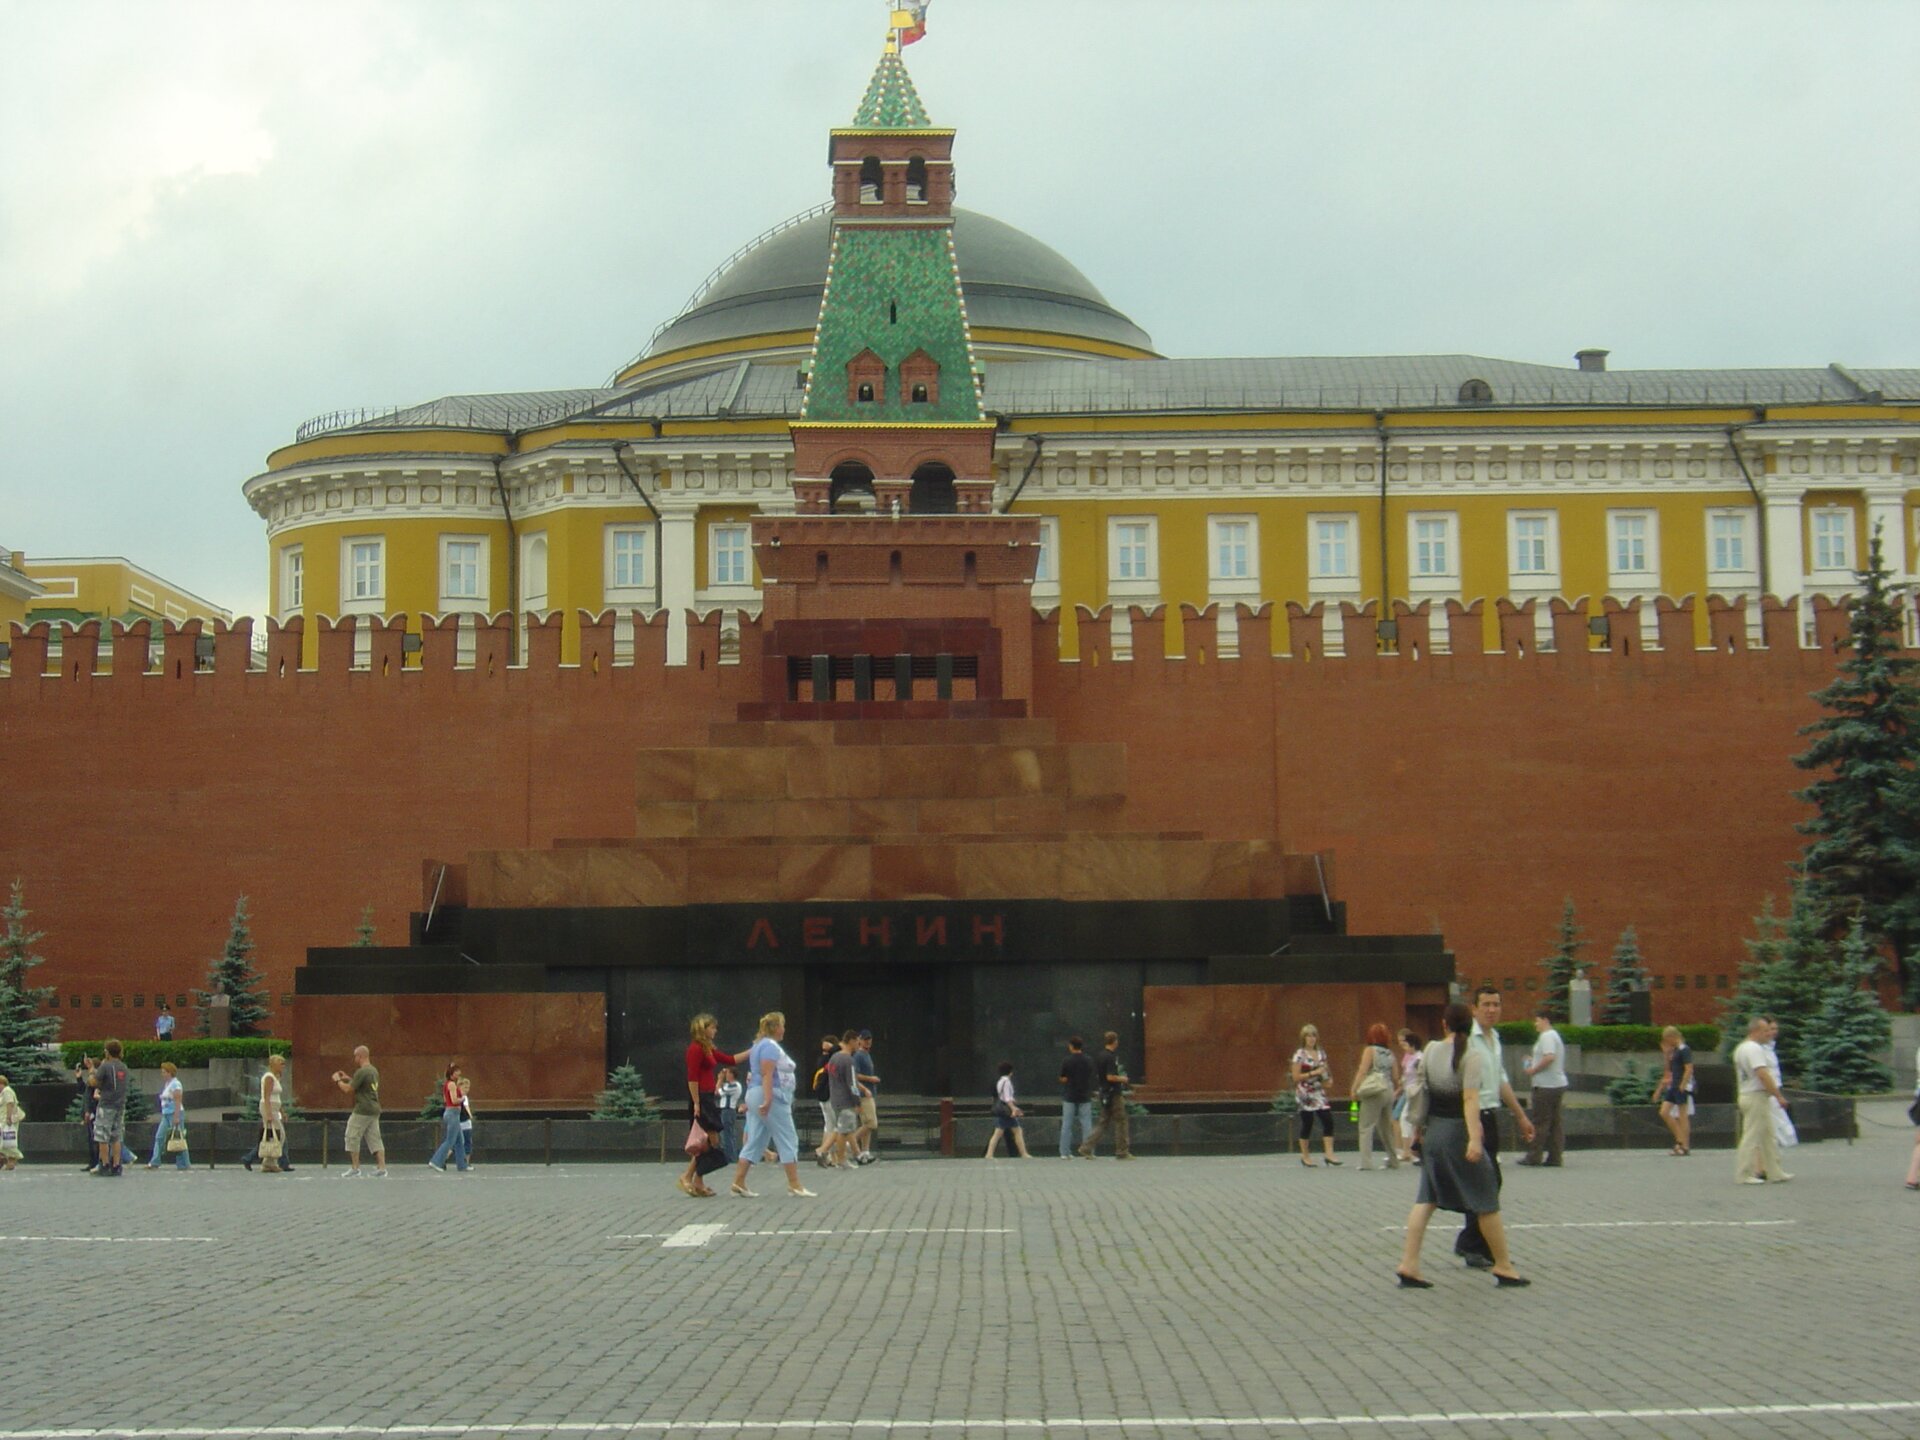 Zdjęcie przedstawia mauzoleum Lenina od strony frontowej - budowlę na planie prostokąta, podzieloną na trzy elementy: podstawę o wysokości około 3 metry, umiejscowionej ponad nią galerii oraz schodkowego zakończenia. Nad wejściem znajduje się napis w języku rosyjskim: Lenin.